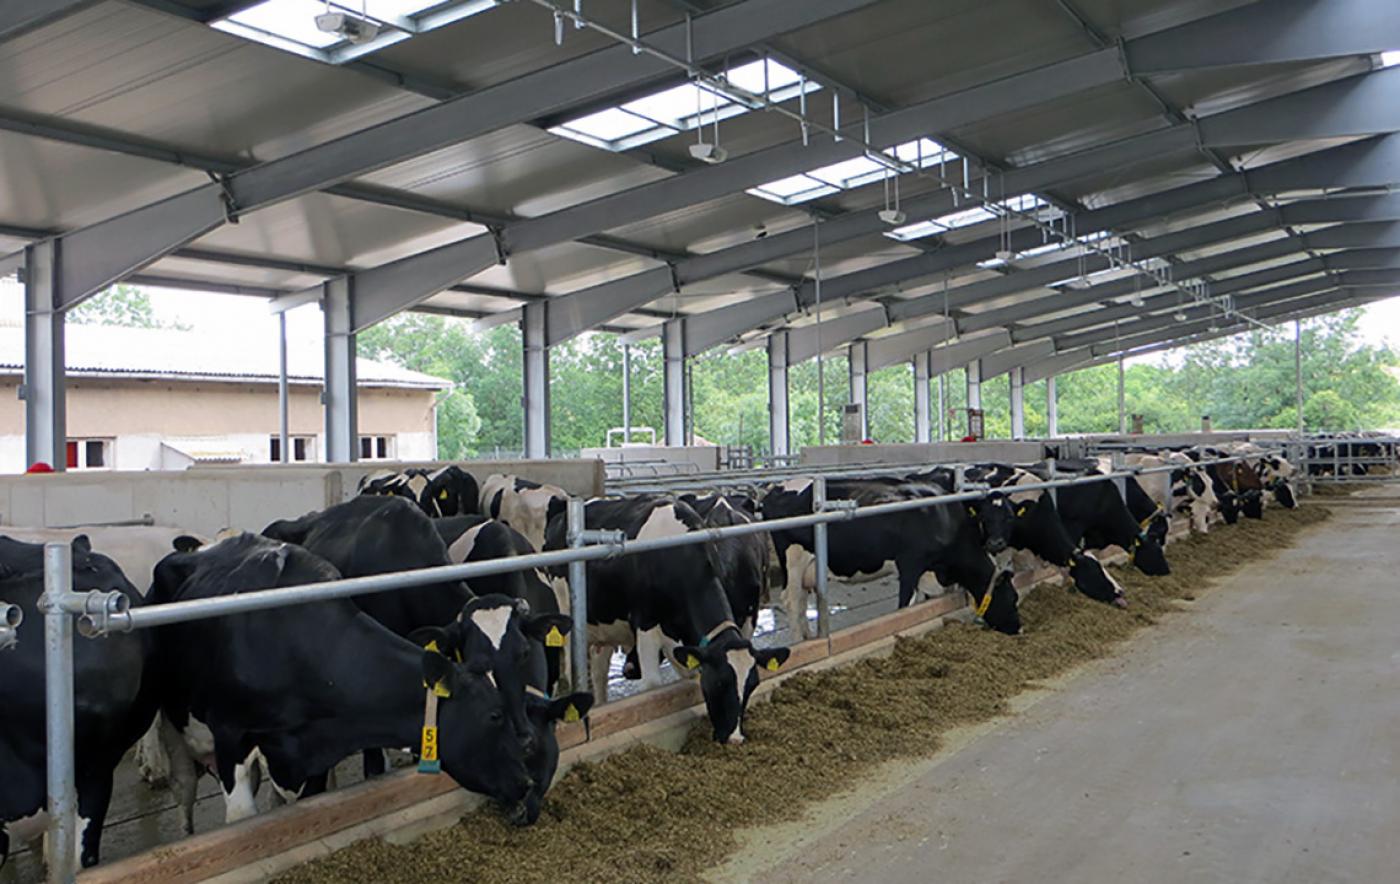 Teilnahme nachdrücklich erwünscht: Umfrage zum Tierwohl in der Milchviehhaltung